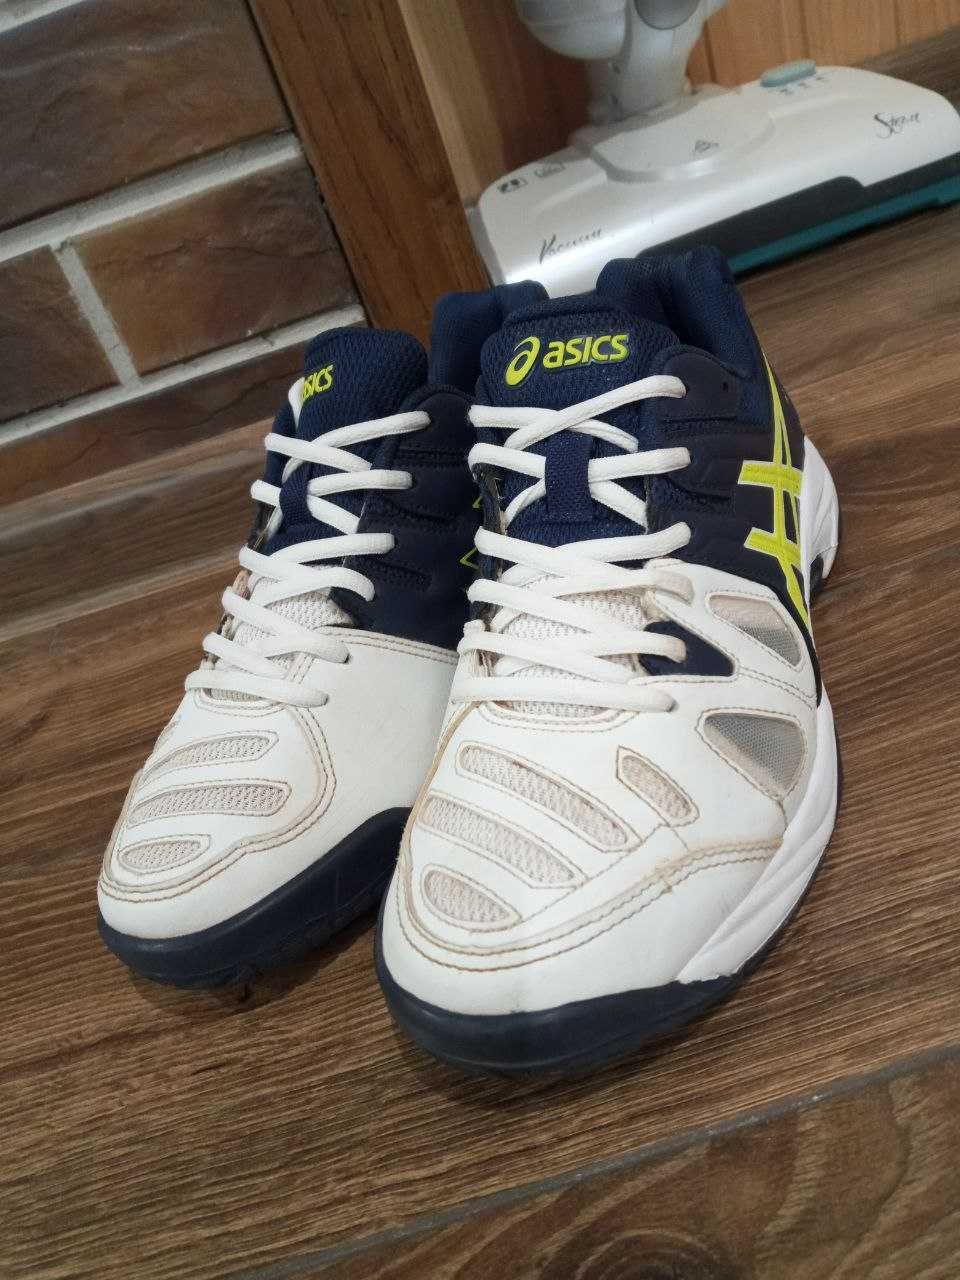 Продам женские кроссовки для бега Asics Gel Game 5 GS. 39.5 размер